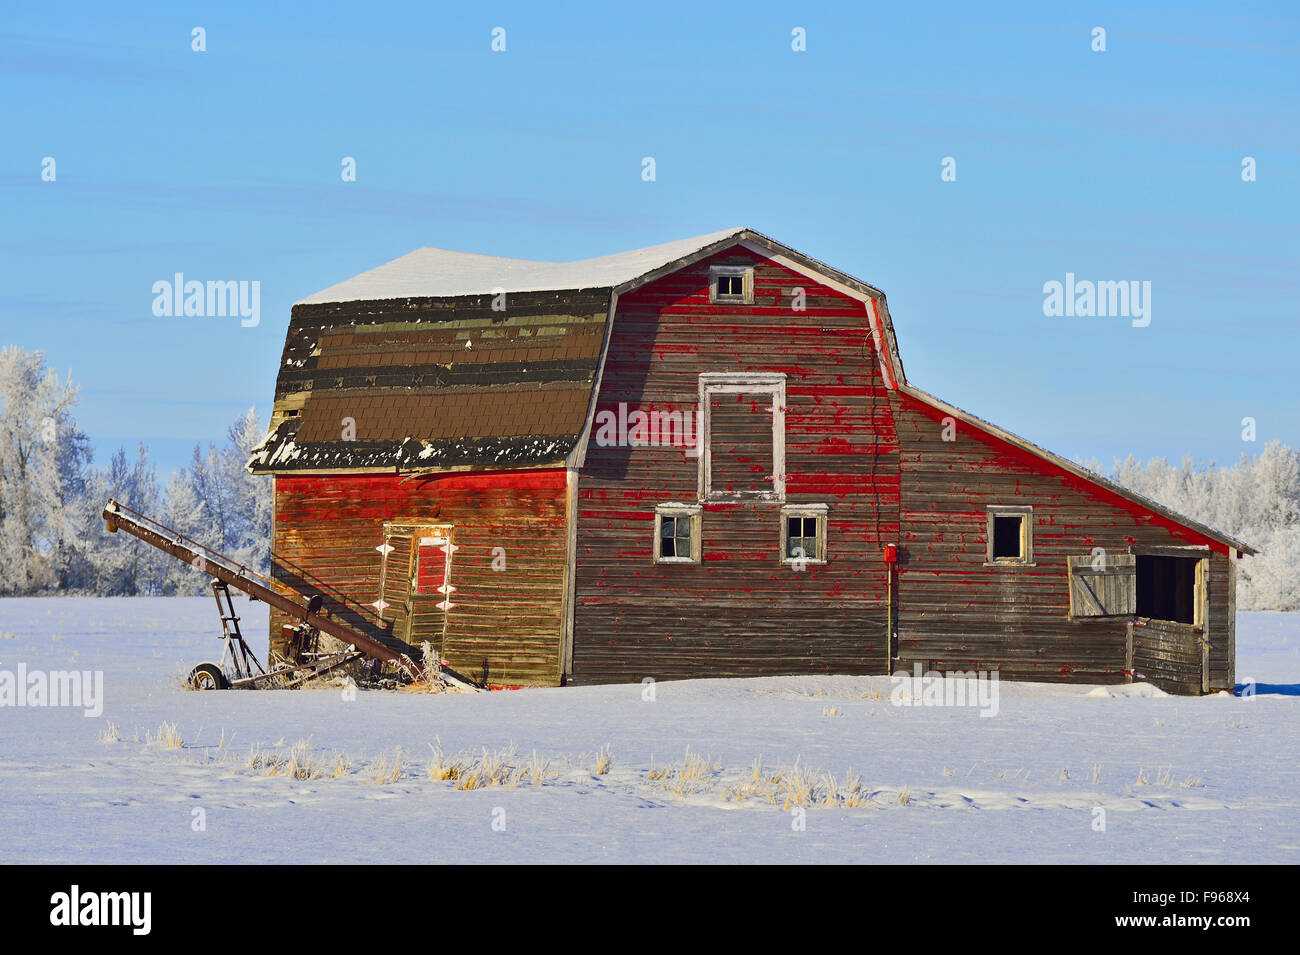 Eine alte rote Scheune auf einem Bauernhof im ländlichen Alberta Kanada steht stark im Winter Schnee in der Nähe von Morinville, Alberta, Kanada Stockfoto